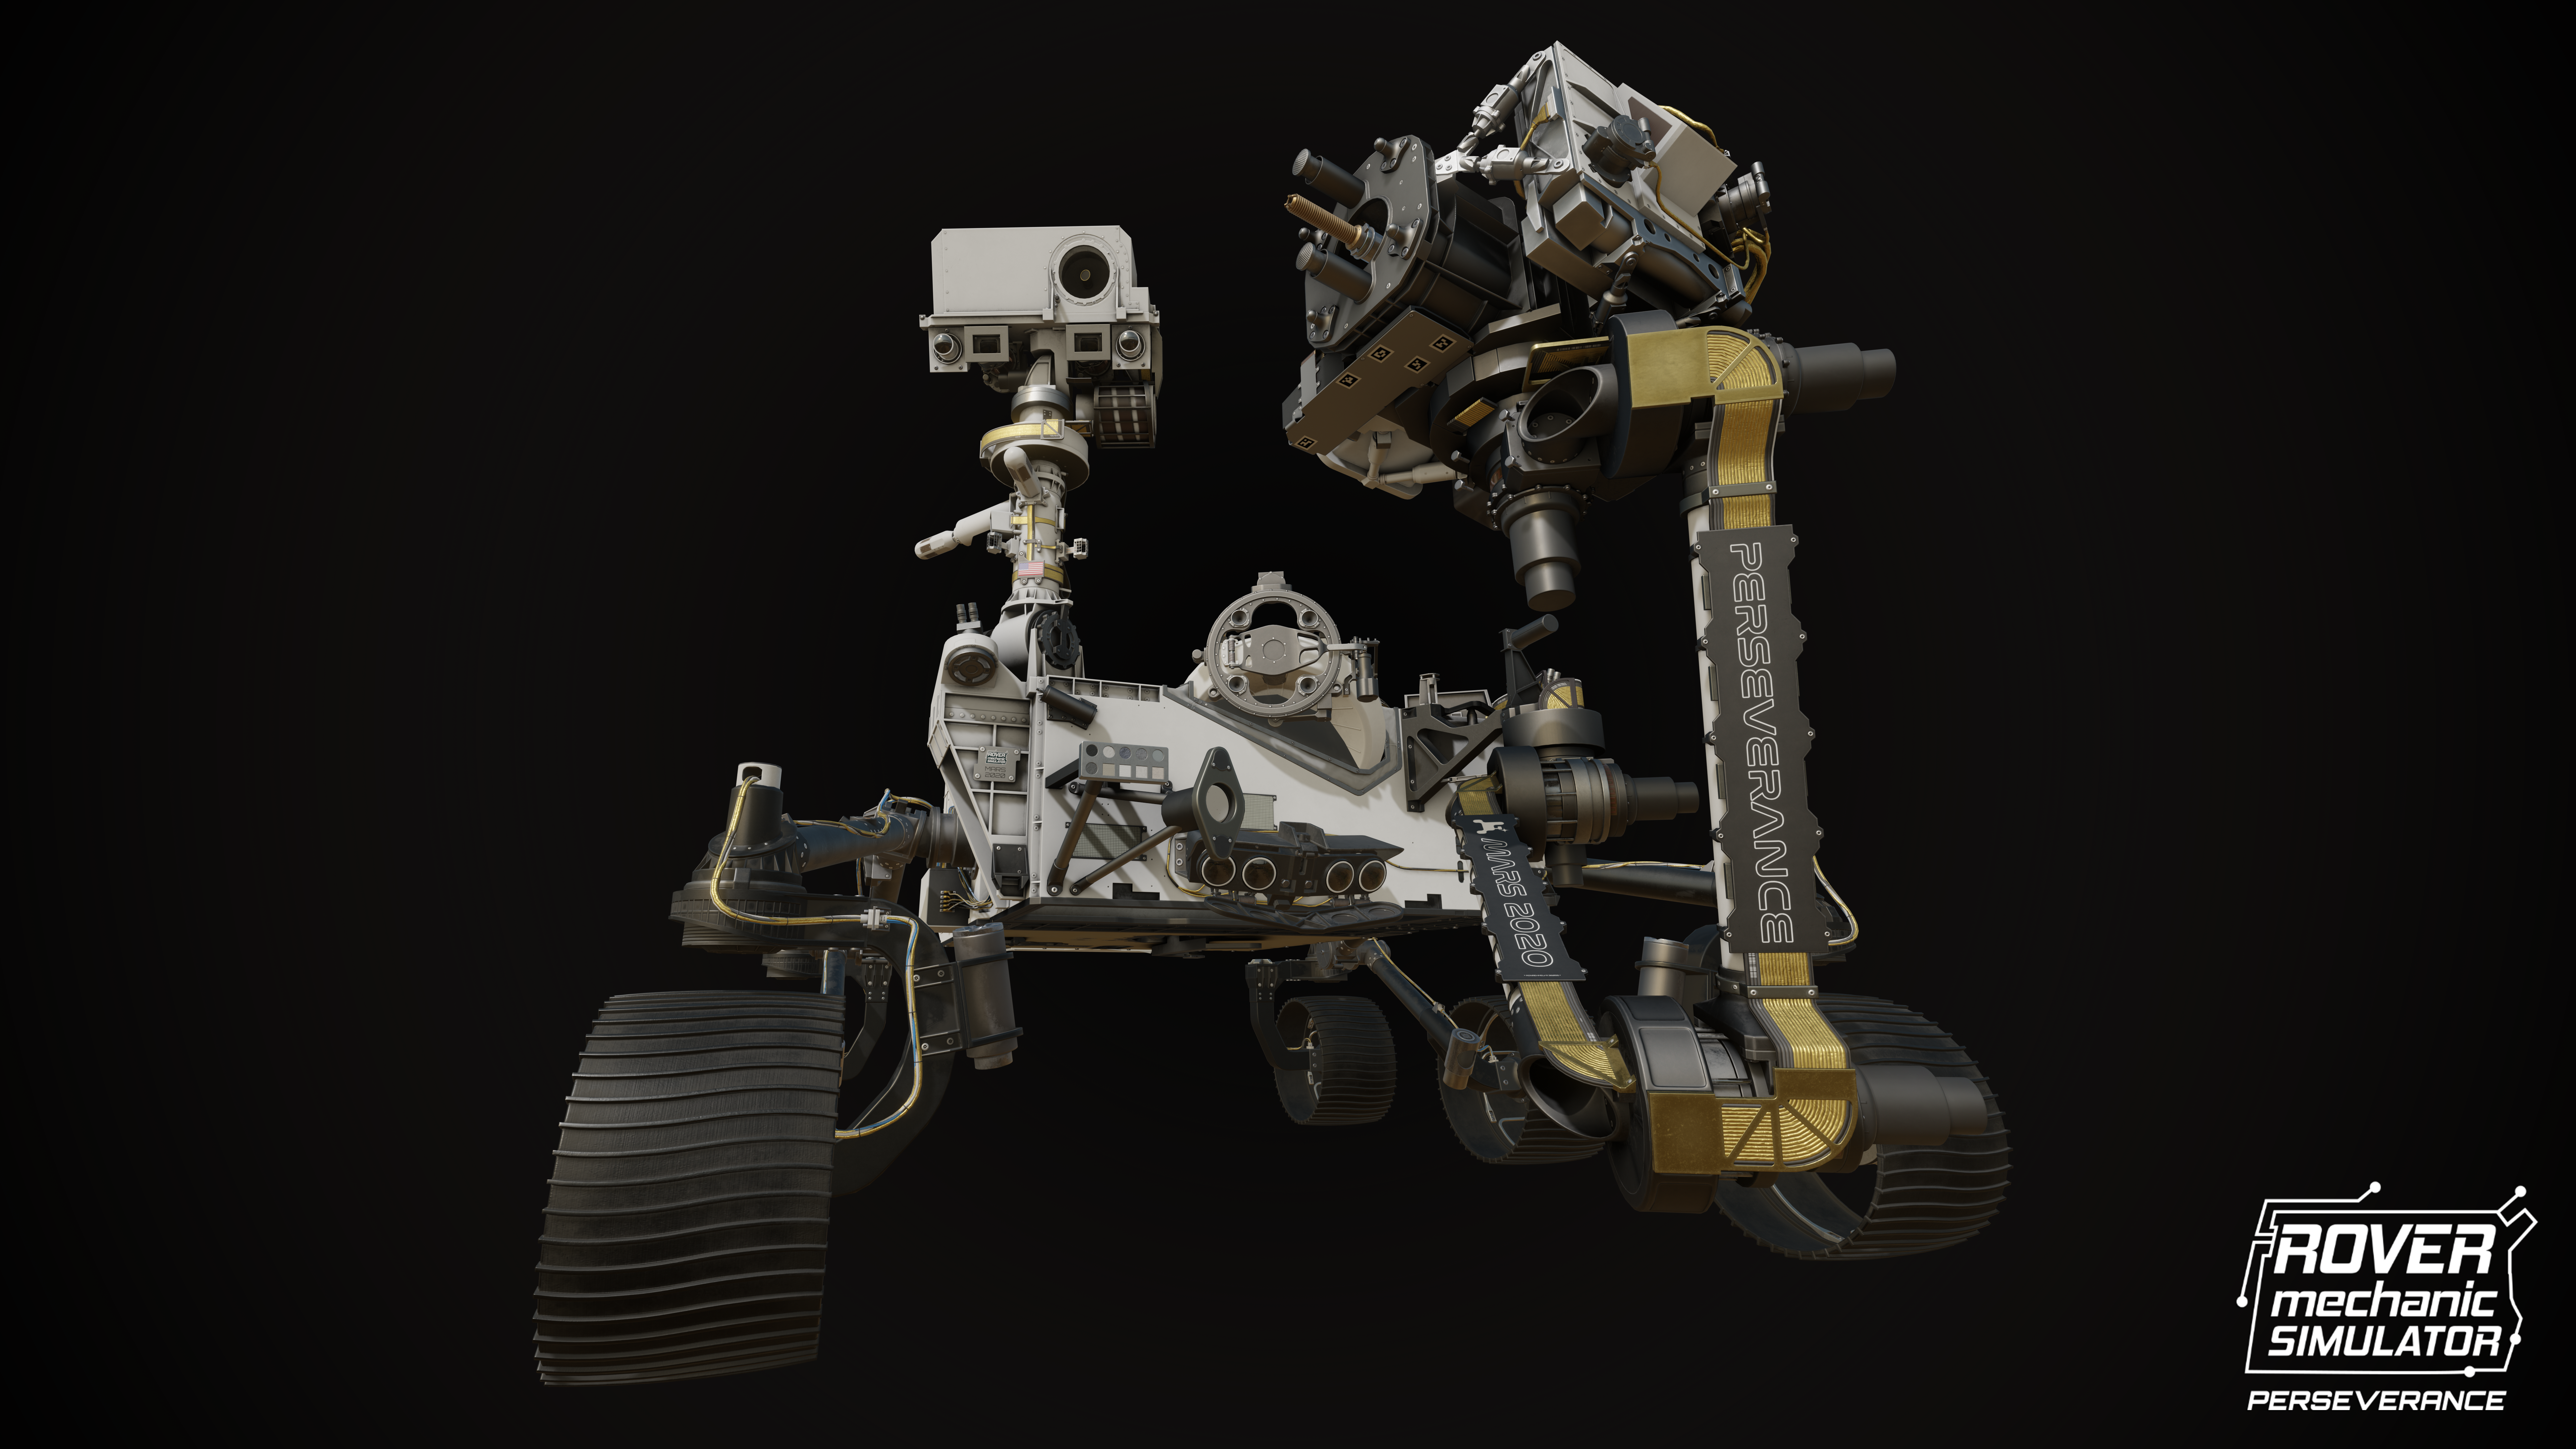 Perseverance Mars Robot Mars Rover Rover NASA Curiosity Video Game Art 7680x4320